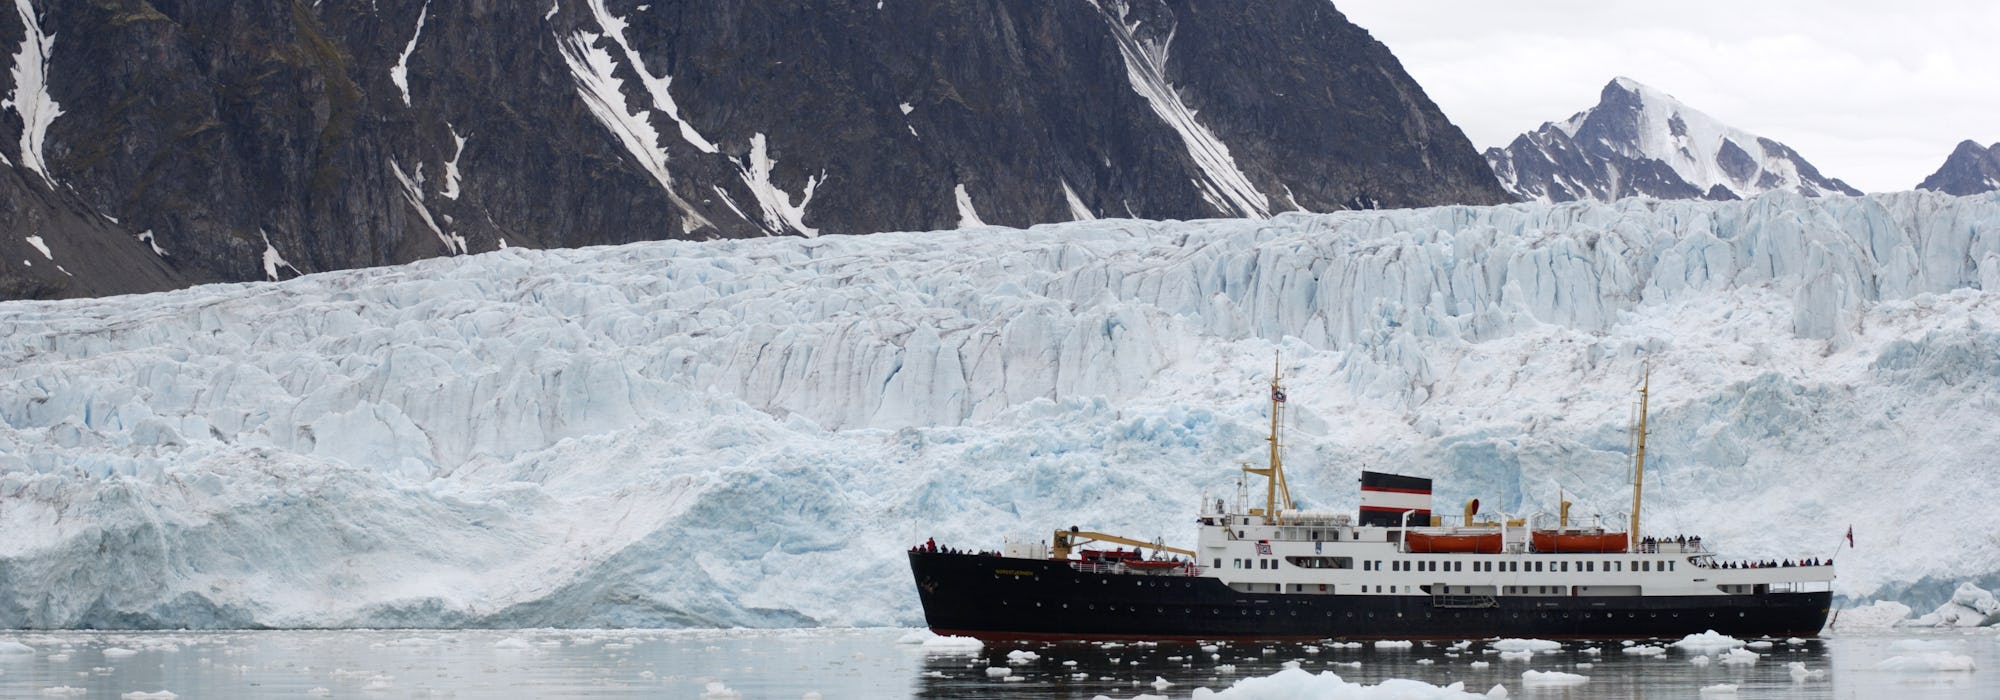 Fartyget MS Nordstjernen kryssar sig fram i islandskapet på Svalbard med isberg och snötäckta berg i bakgrunden.